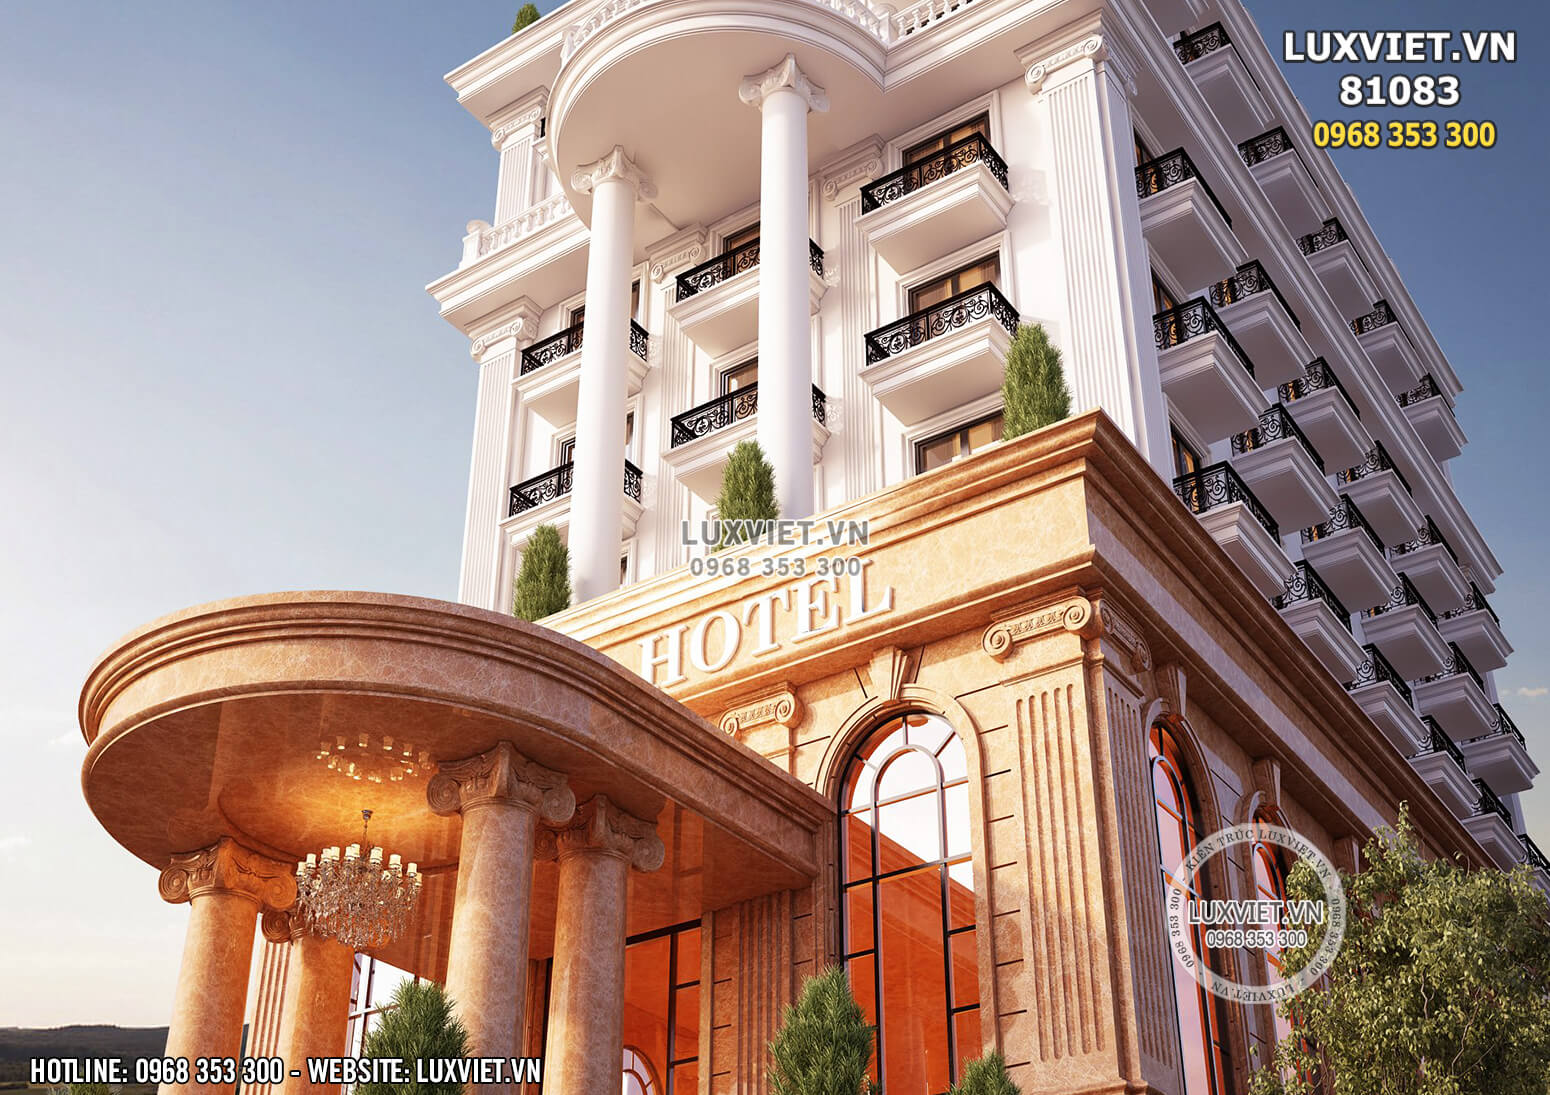 Hình ảnh: Thiết kế kiến trúc đẳng cấp của mẫu khách sạn 3 sao tại Đà Lạt - LV 81083